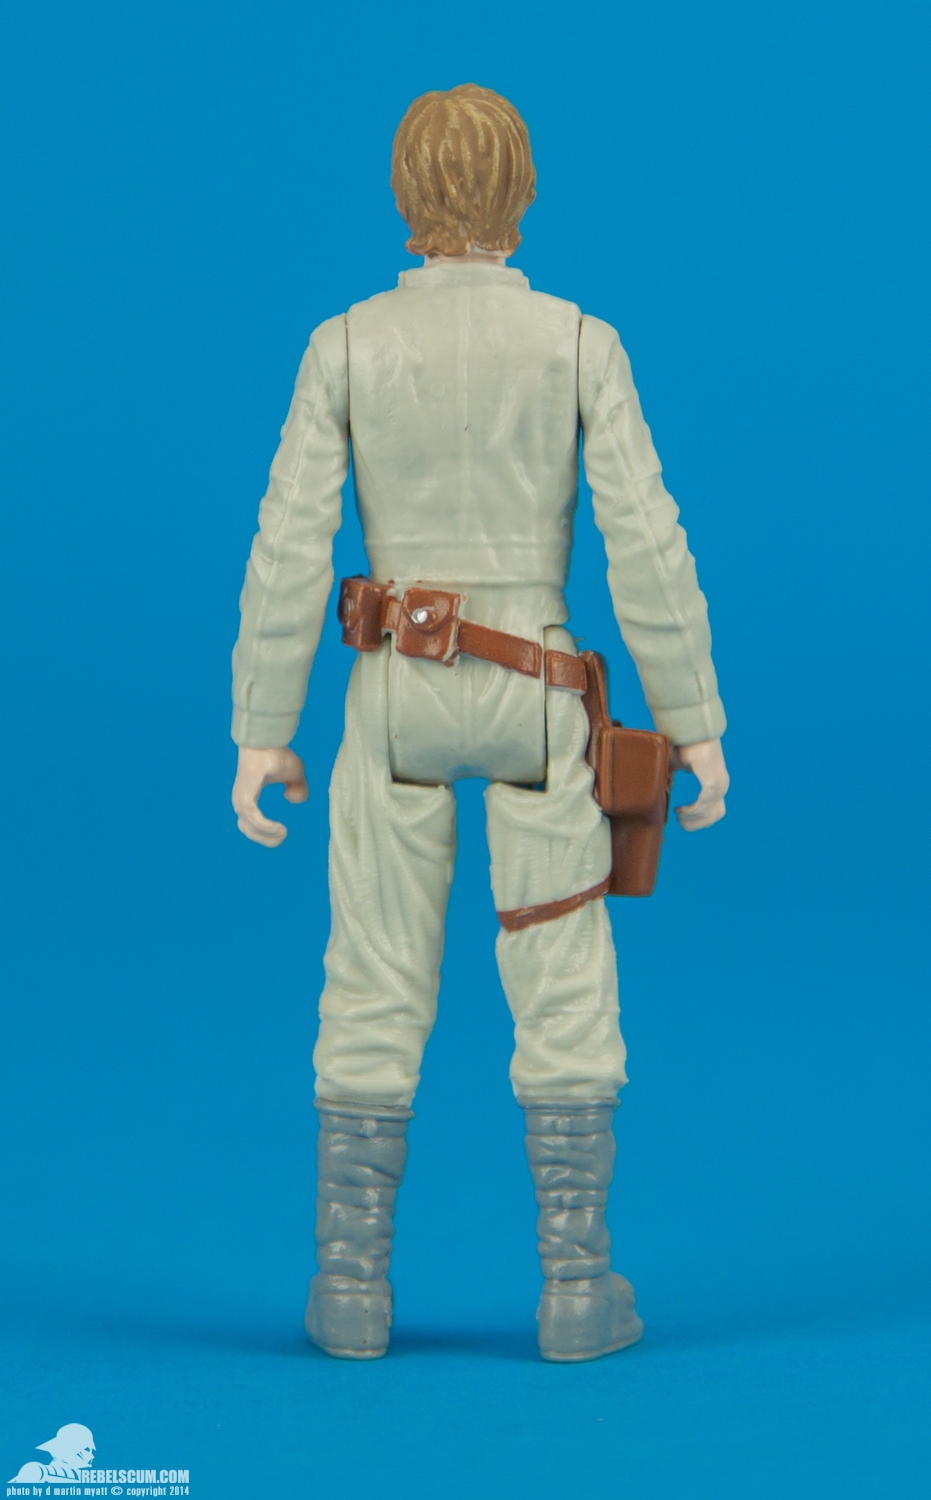 Mission-Series-Luke-Vader-early-look-Star-Wars-Hasbro-004.jpg